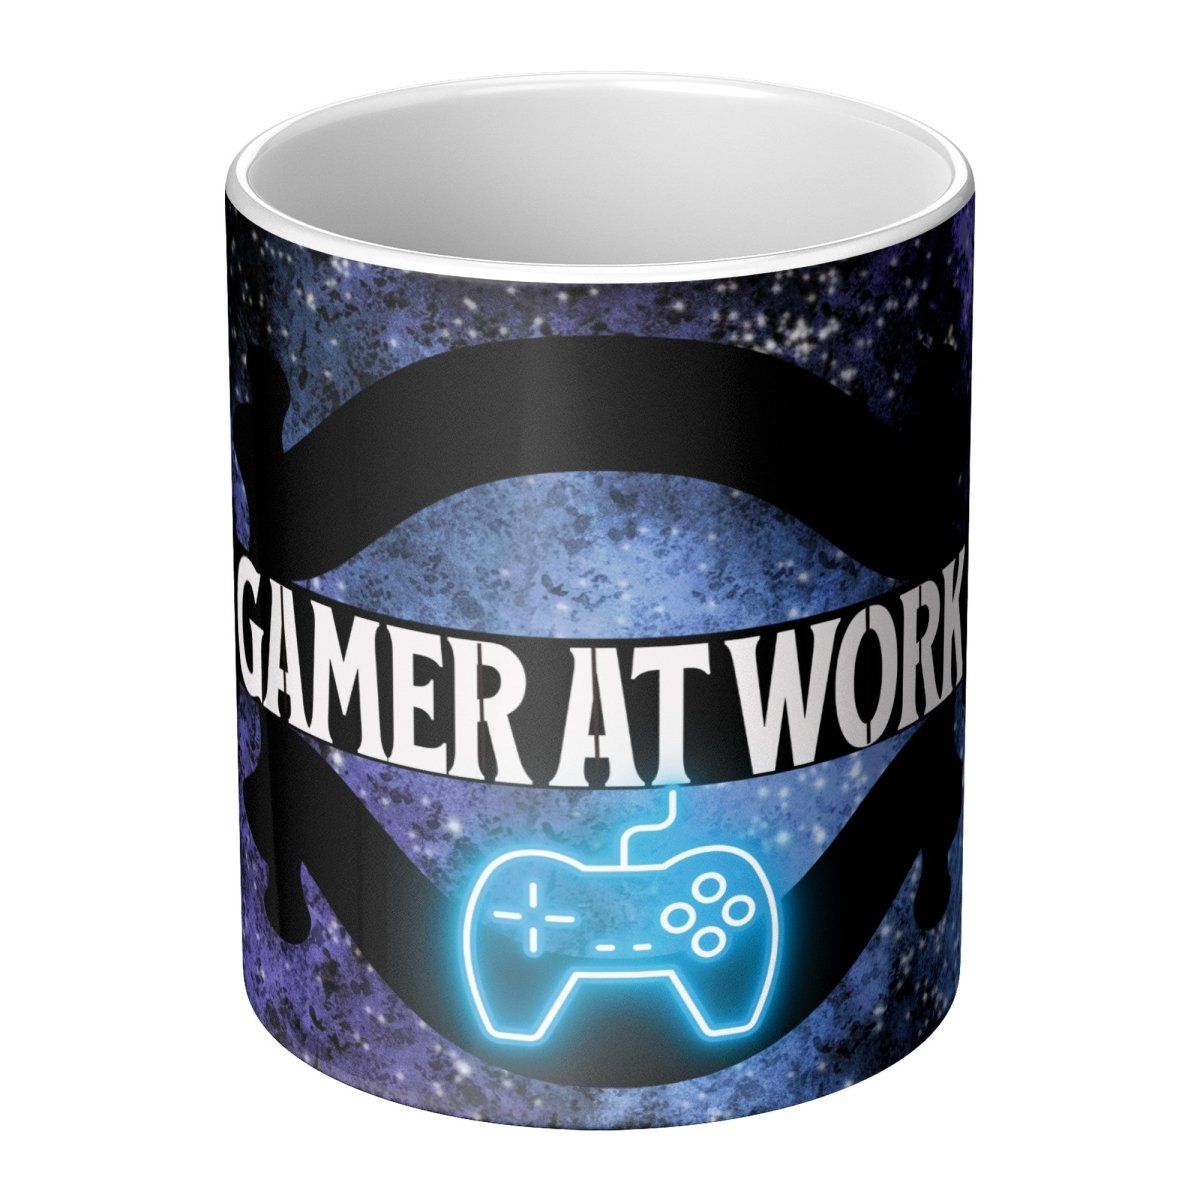 Gamers Perfect Gift Work Mug - Iron Phoenix GHG